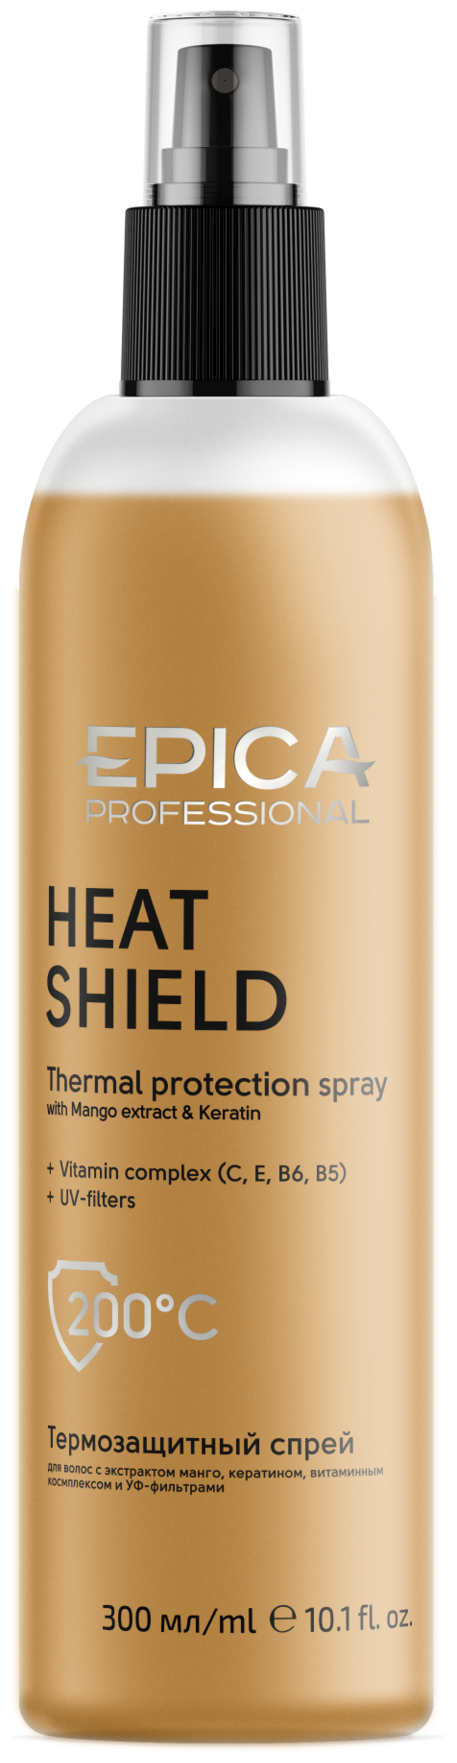 EPICA Professional Heat Shield Спрей для волос с термозащитным комплексом и экстрактами, 300 мл, спрей